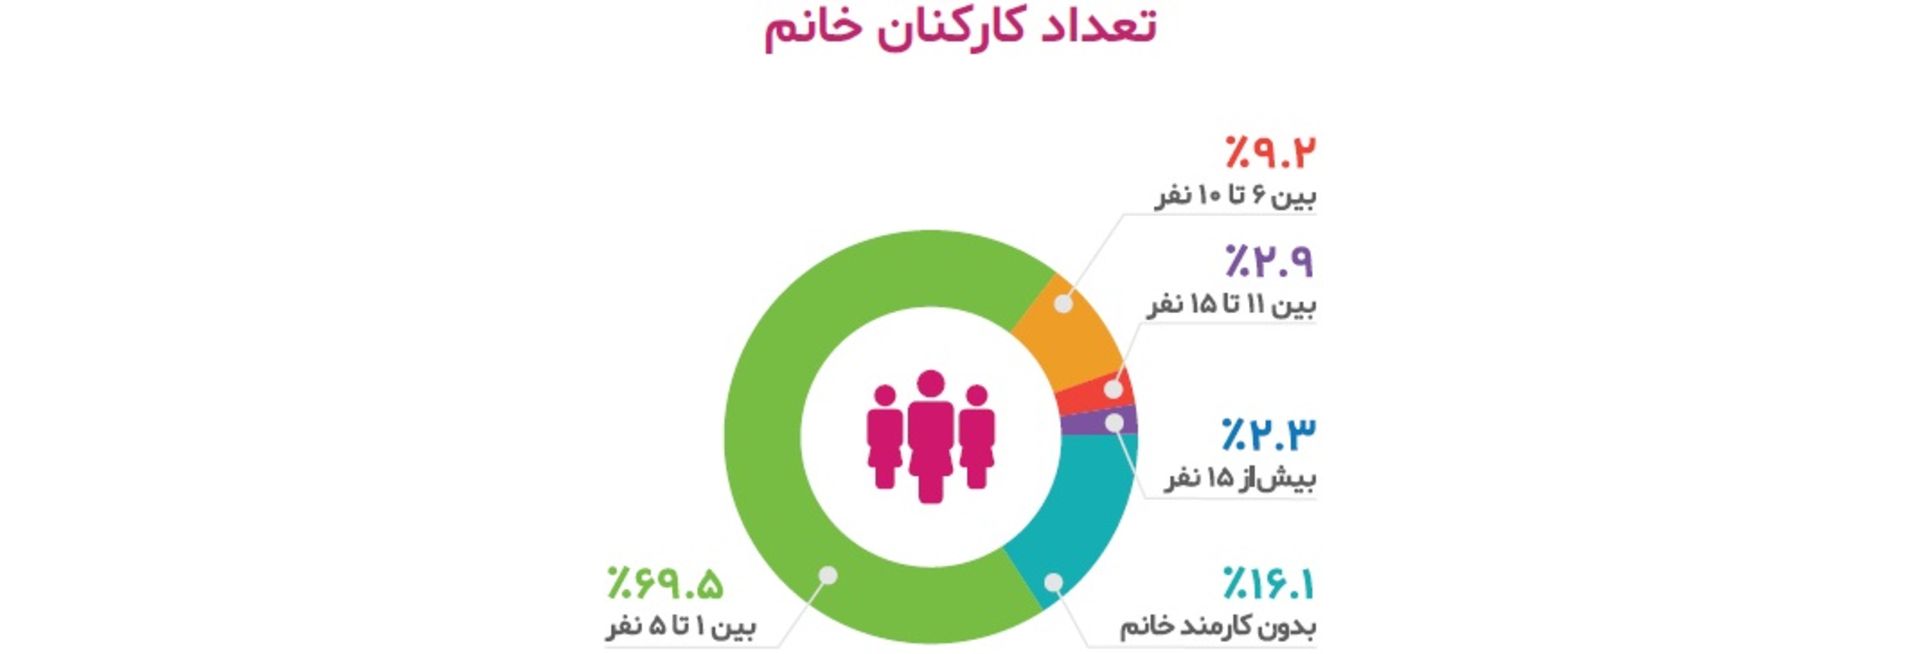 تعداد کارکنان خانم استارتاپ ایرانی